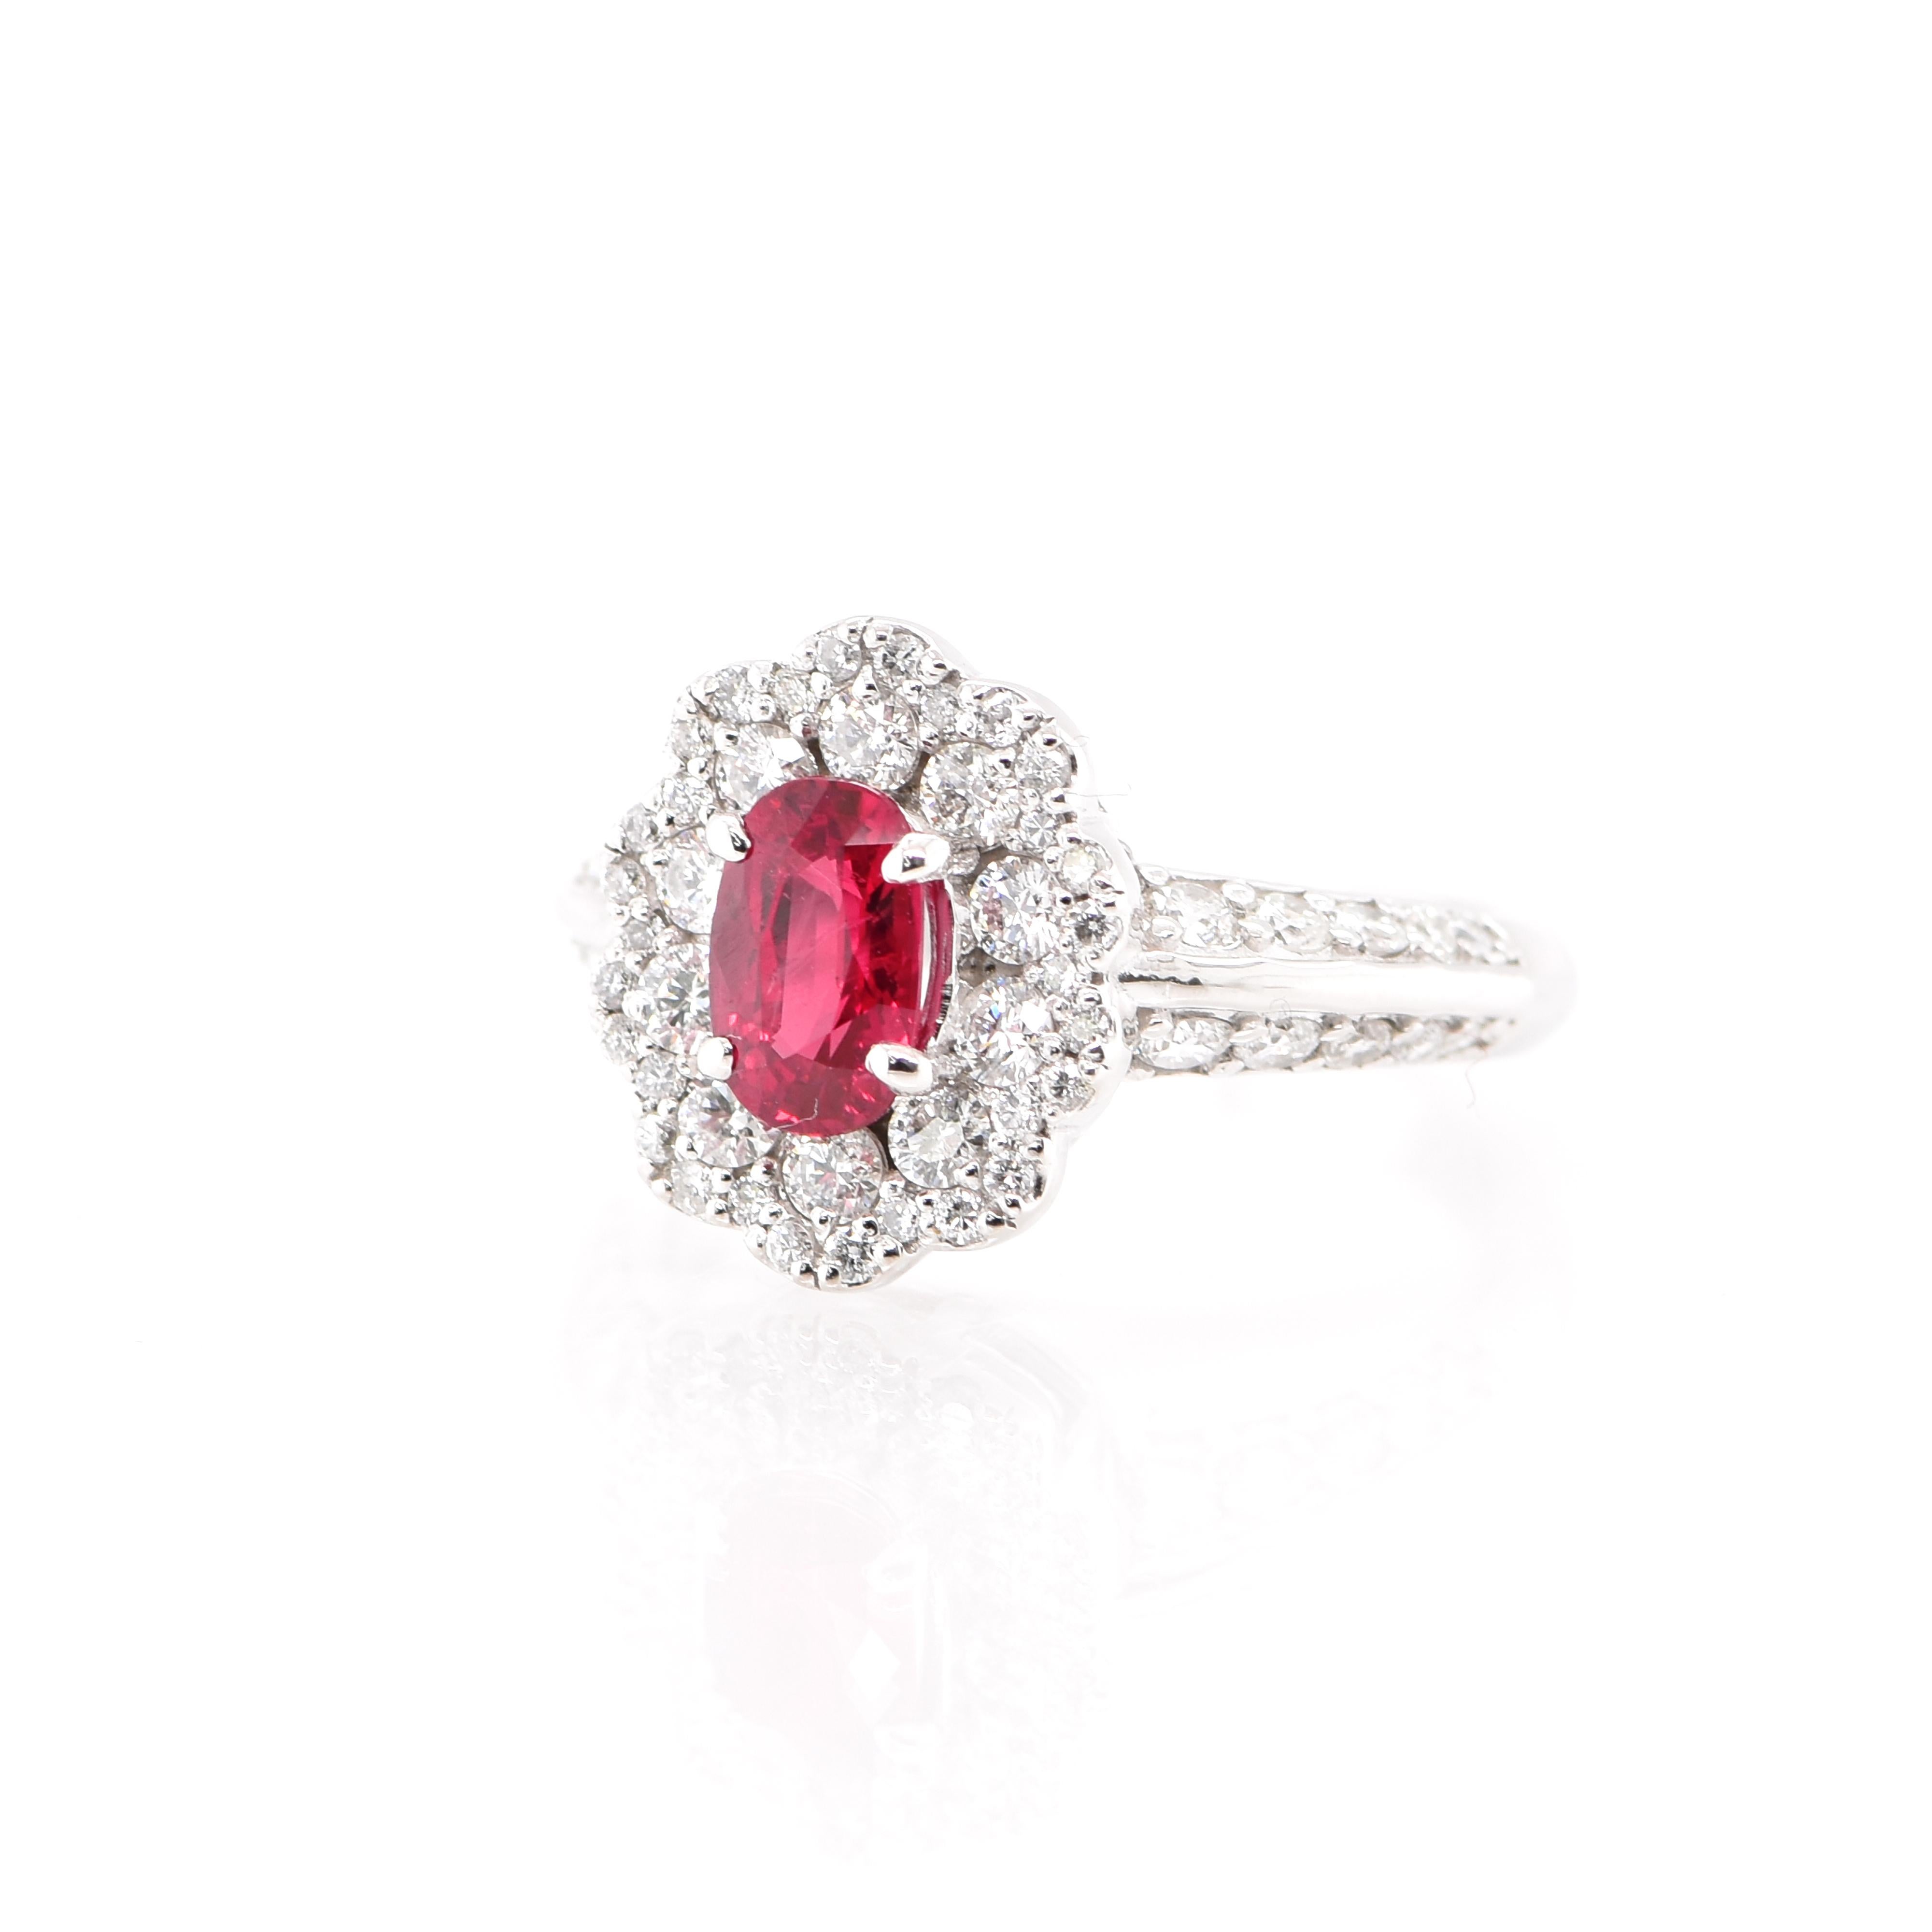 Cette magnifique bague de type halo est ornée d'un rubis naturel de 1,00 carat et de 0,94 carat de diamants sertis dans du platine. Les rubis sont appelés 